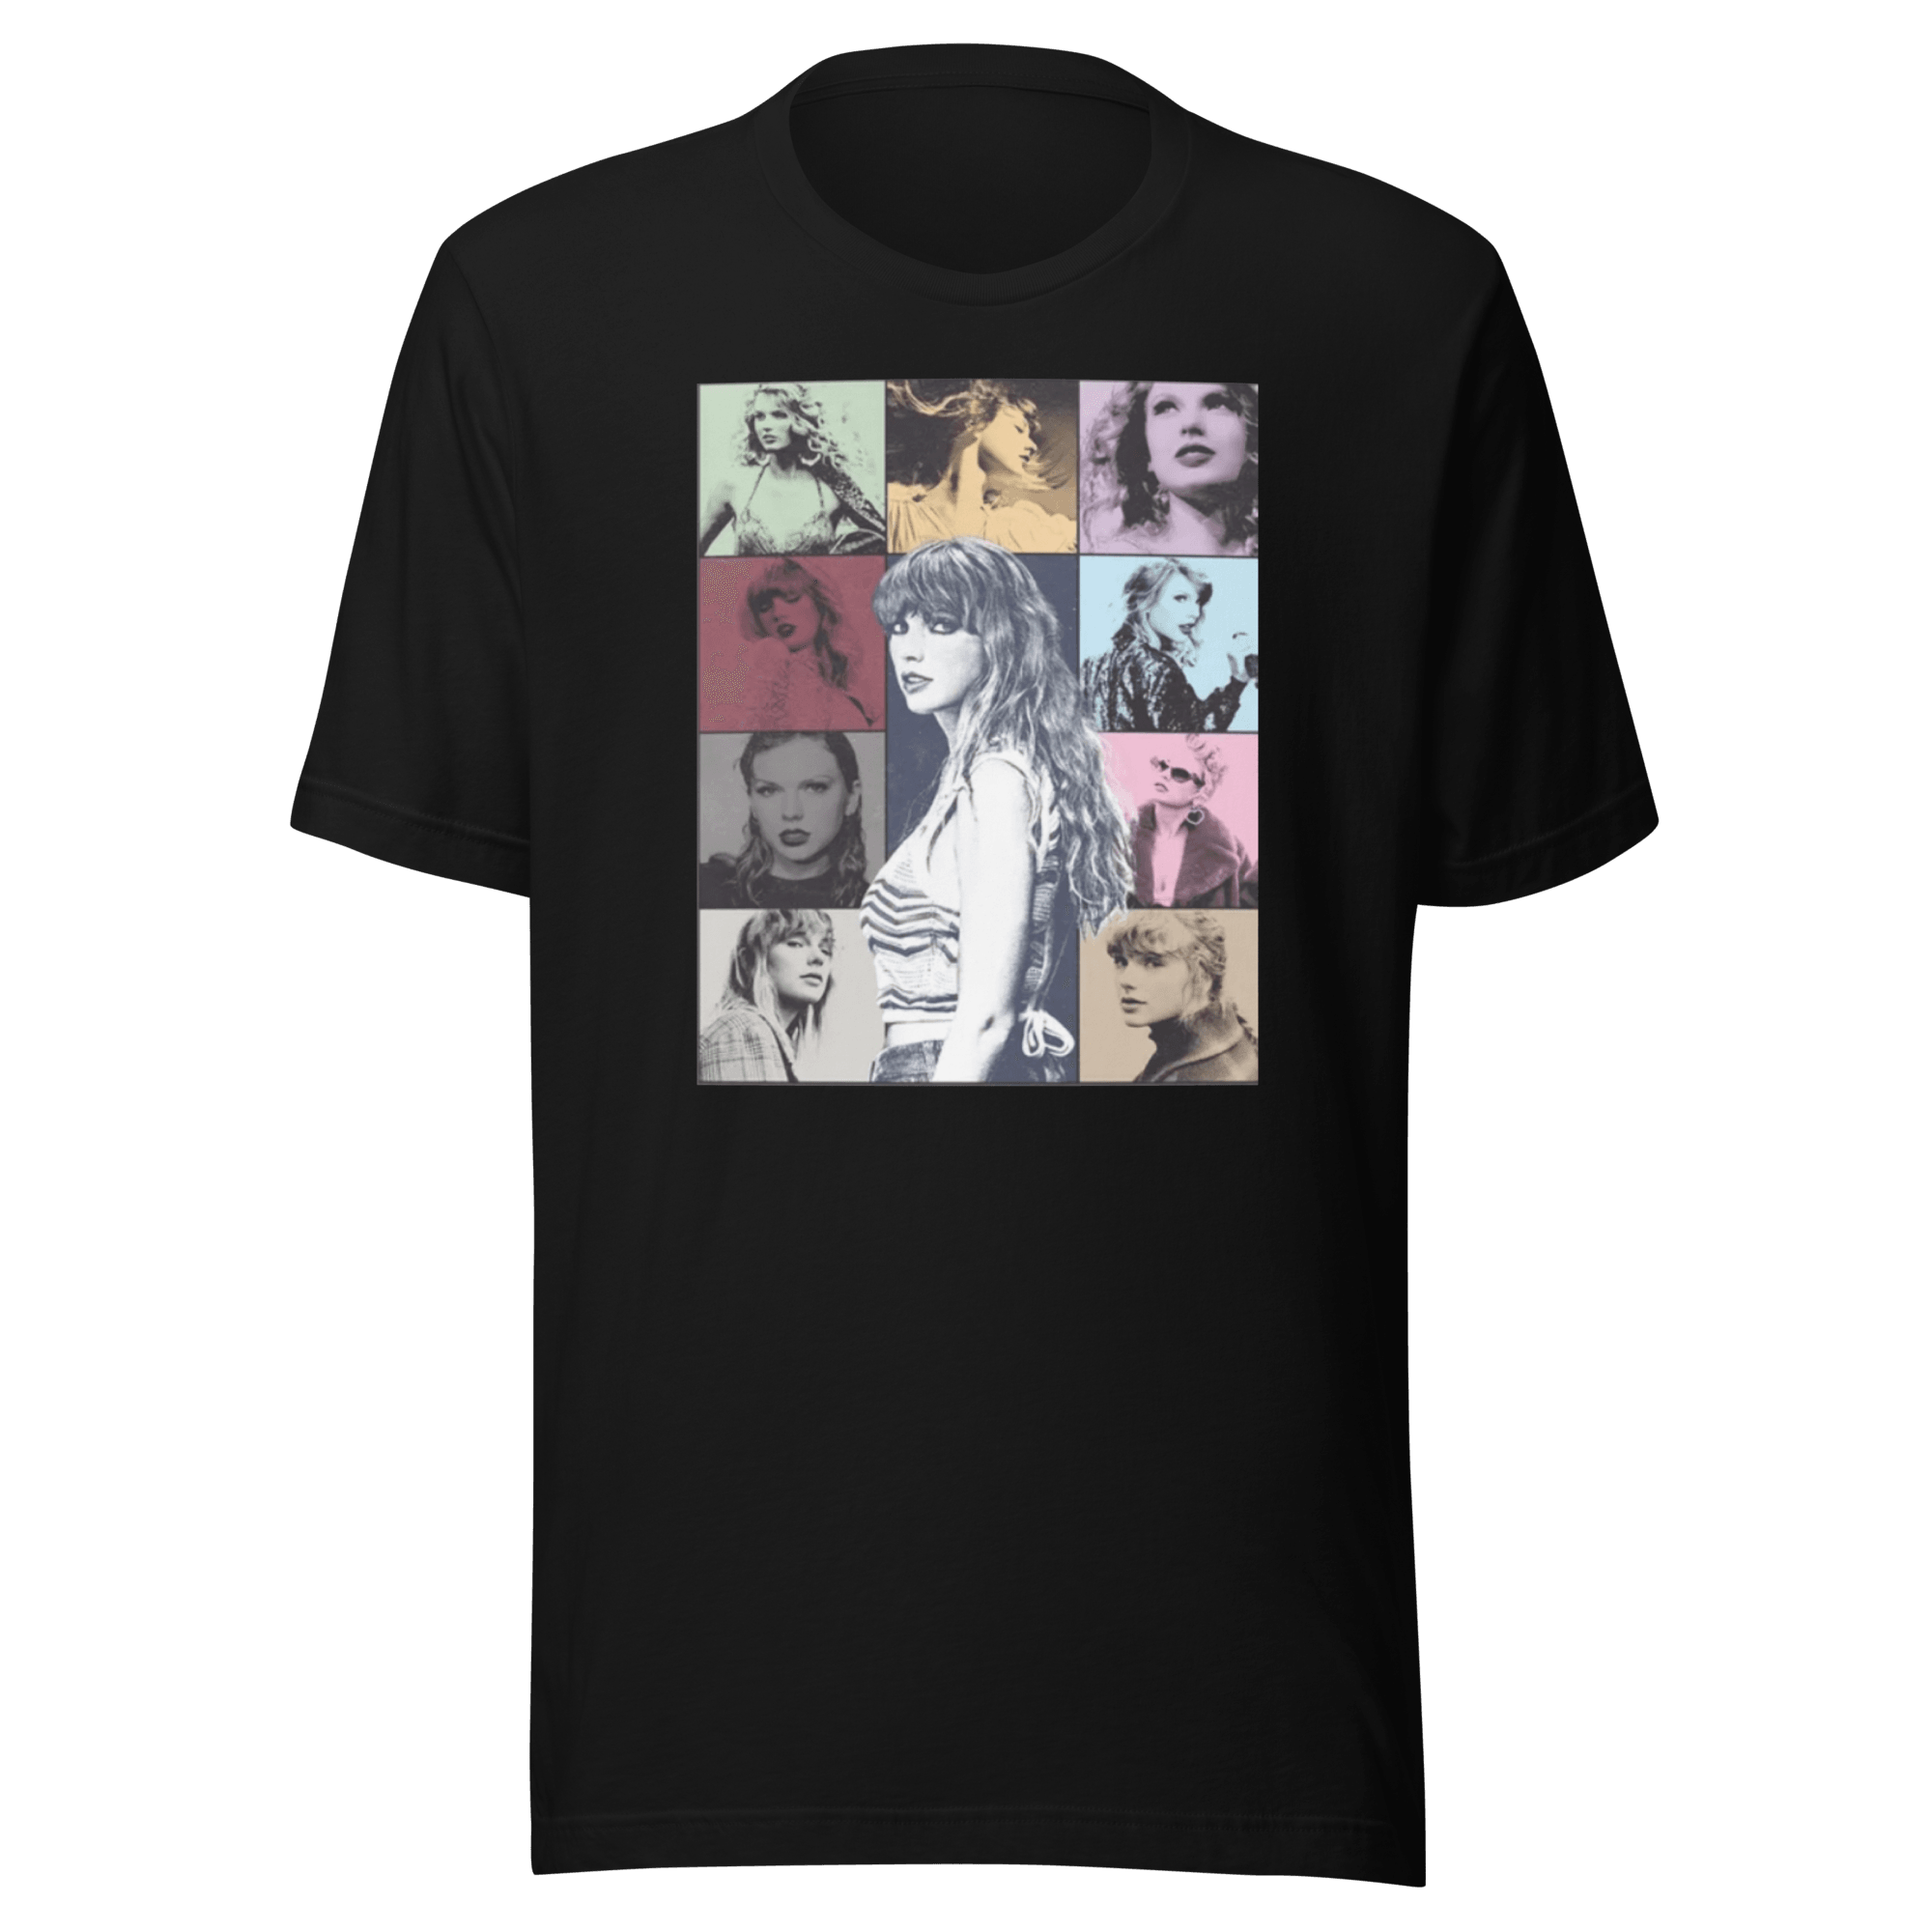 Iconic Pop Star Tour T-shirt Short Sleeve Crewneck 100% Cotton Unisex Top